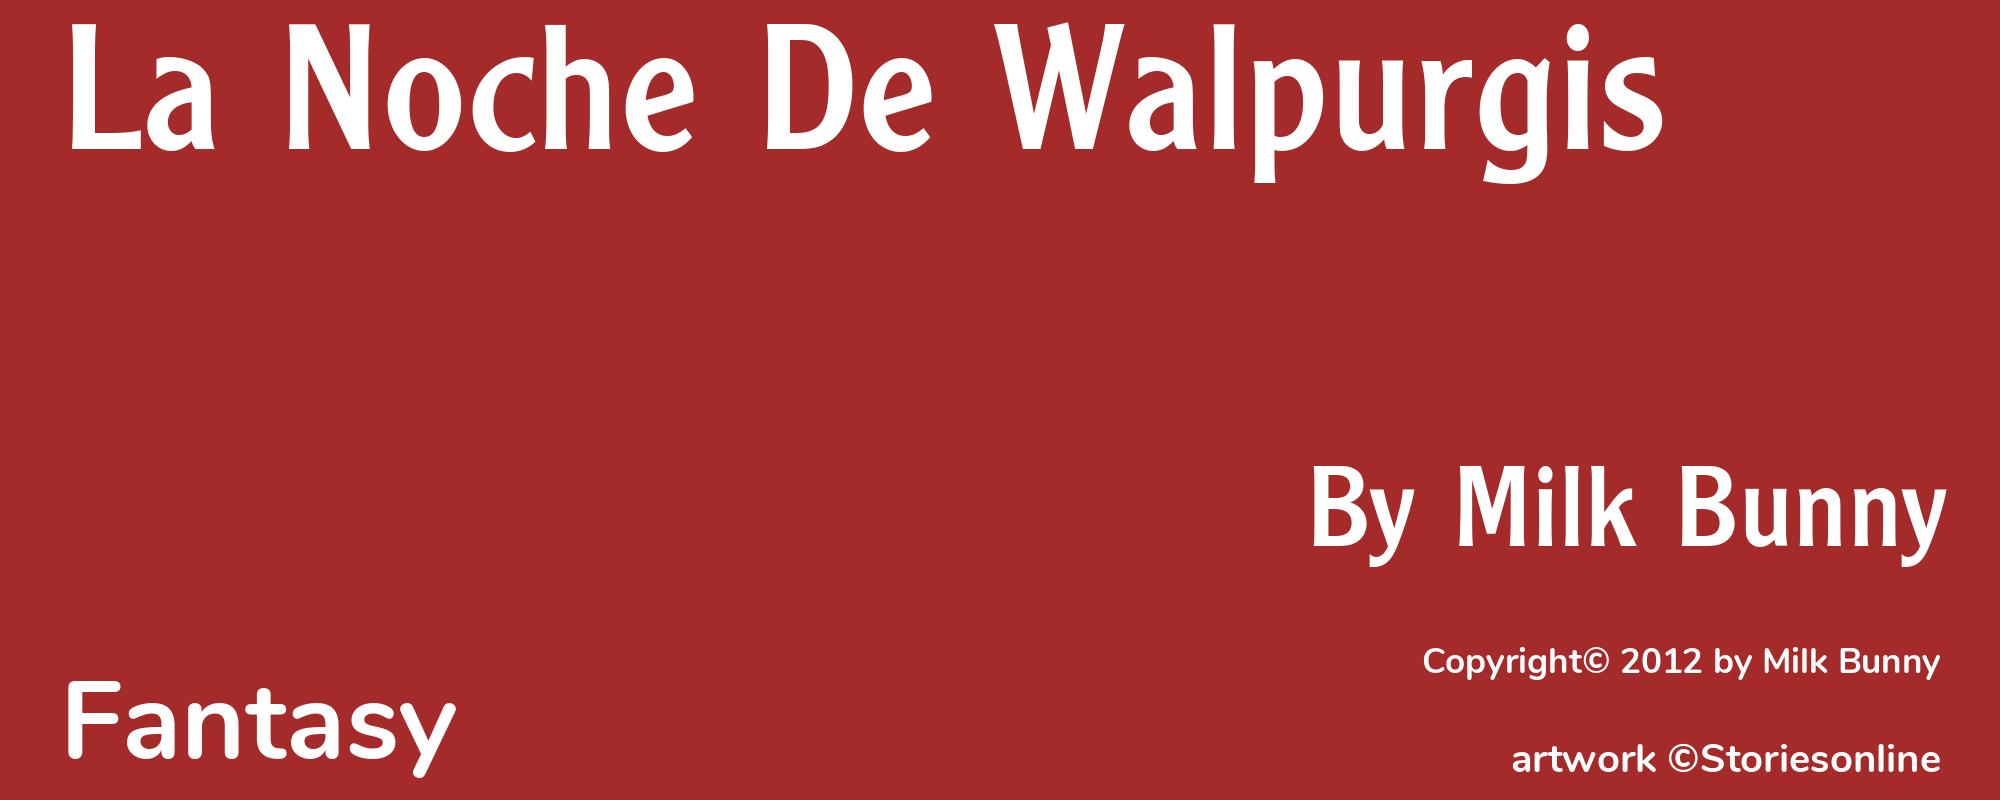 La Noche De Walpurgis - Cover